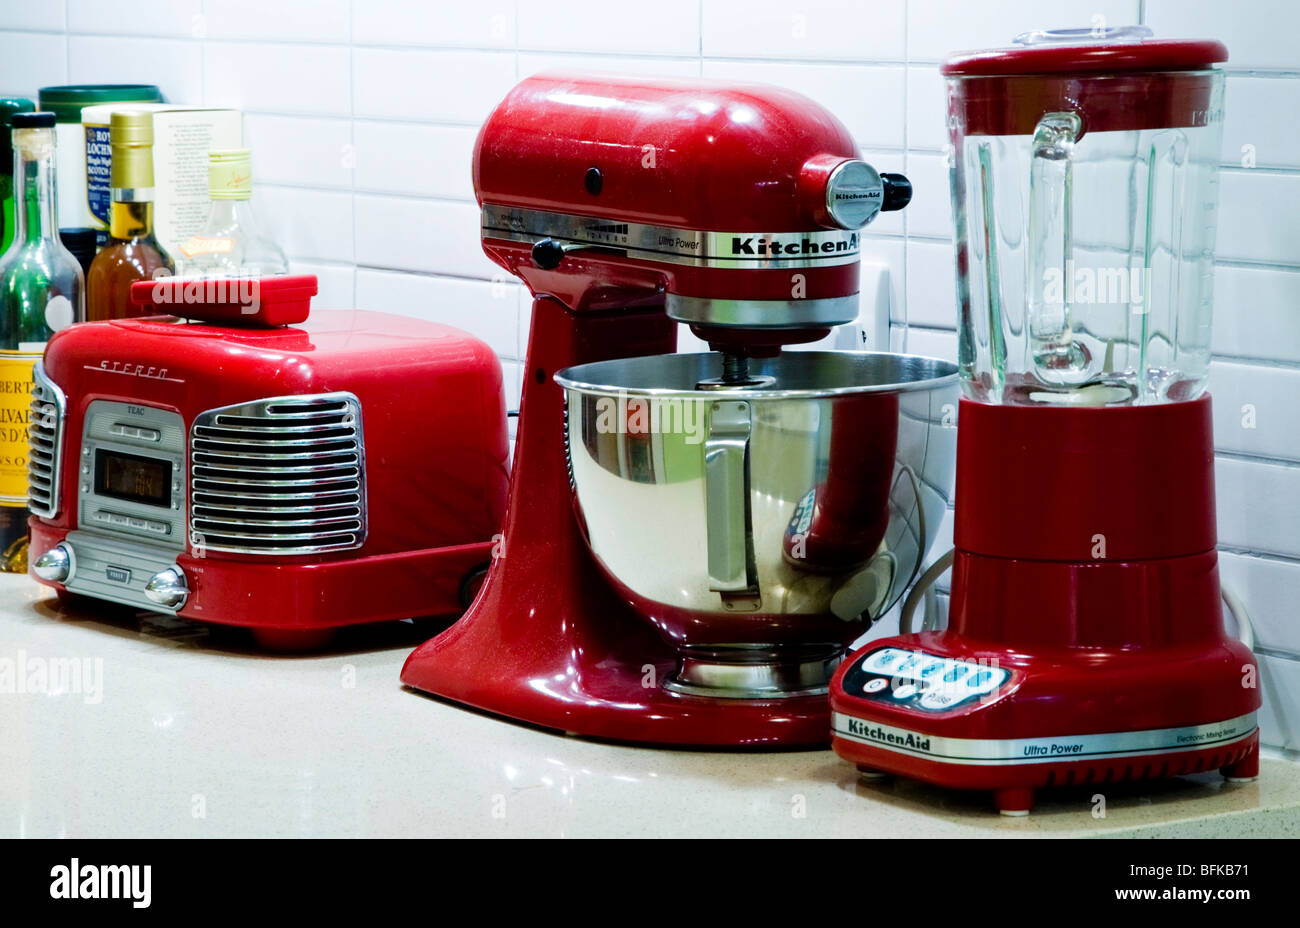 red-retro-kitchen-appliances-on-a-worktop-by-kitchenaid-BFKB71.jpg